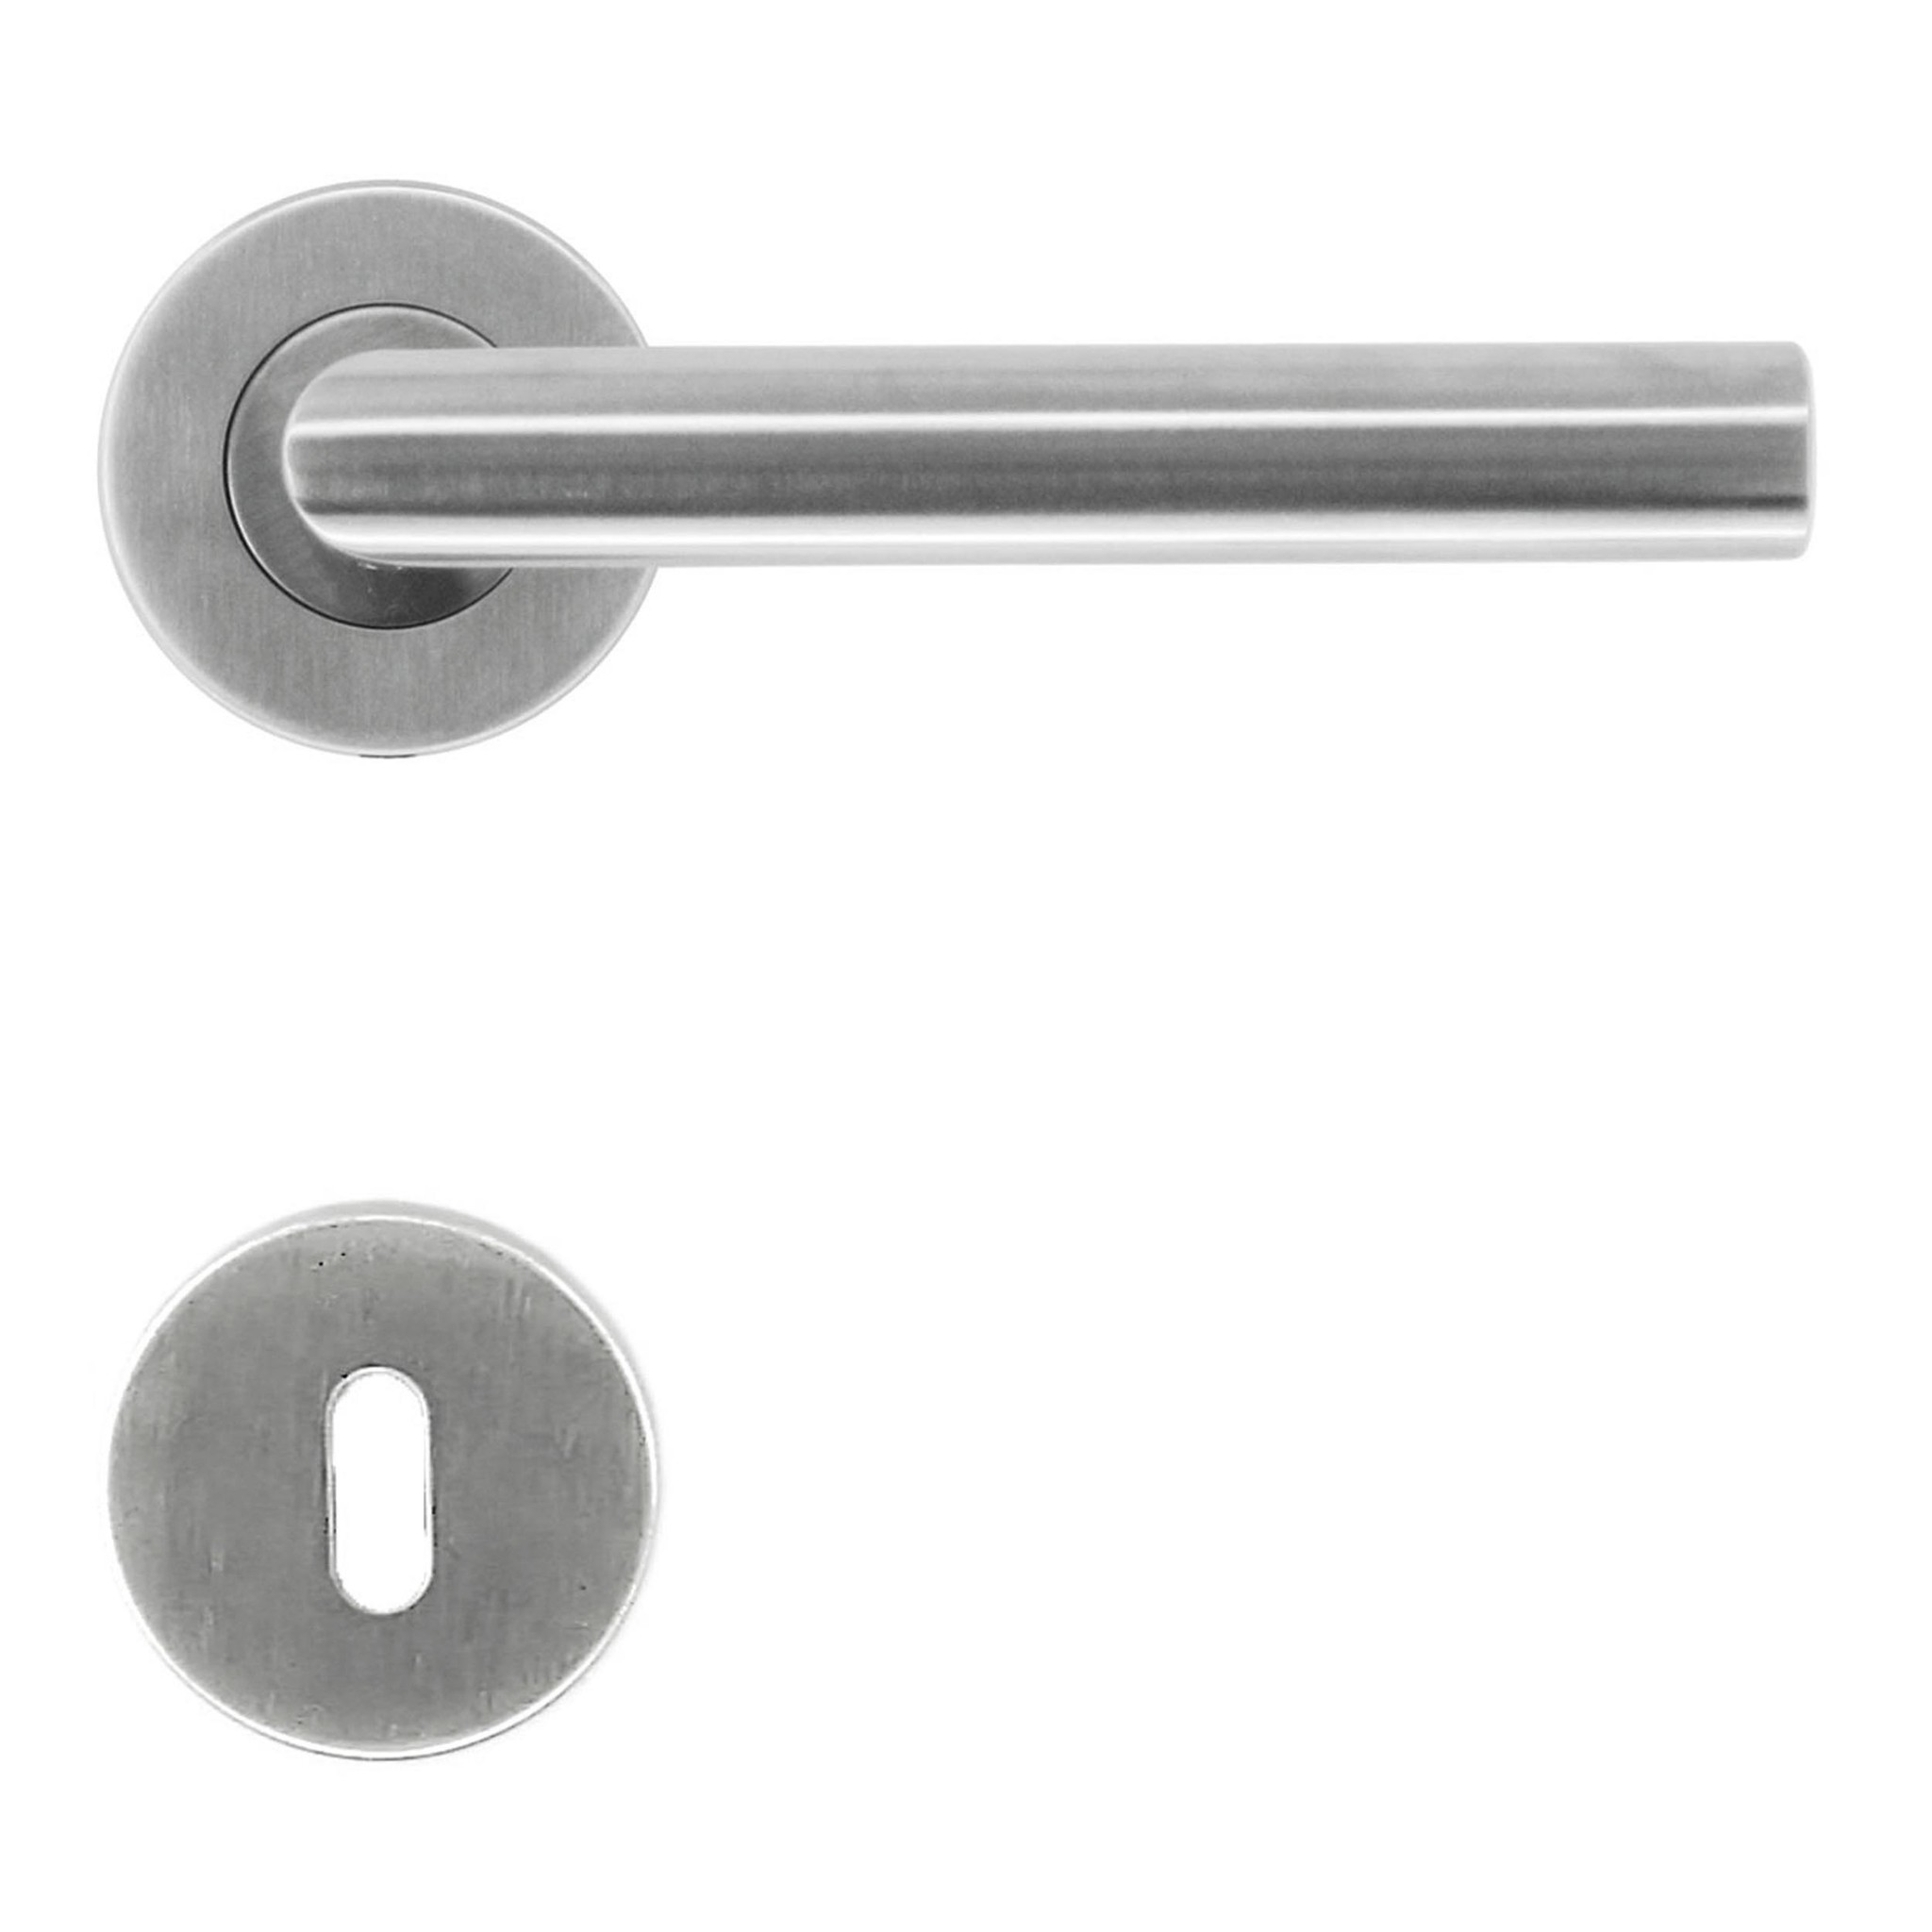 Rvs deurklinken shape 19mm met sleutelplaatjes Deurklinkenshop